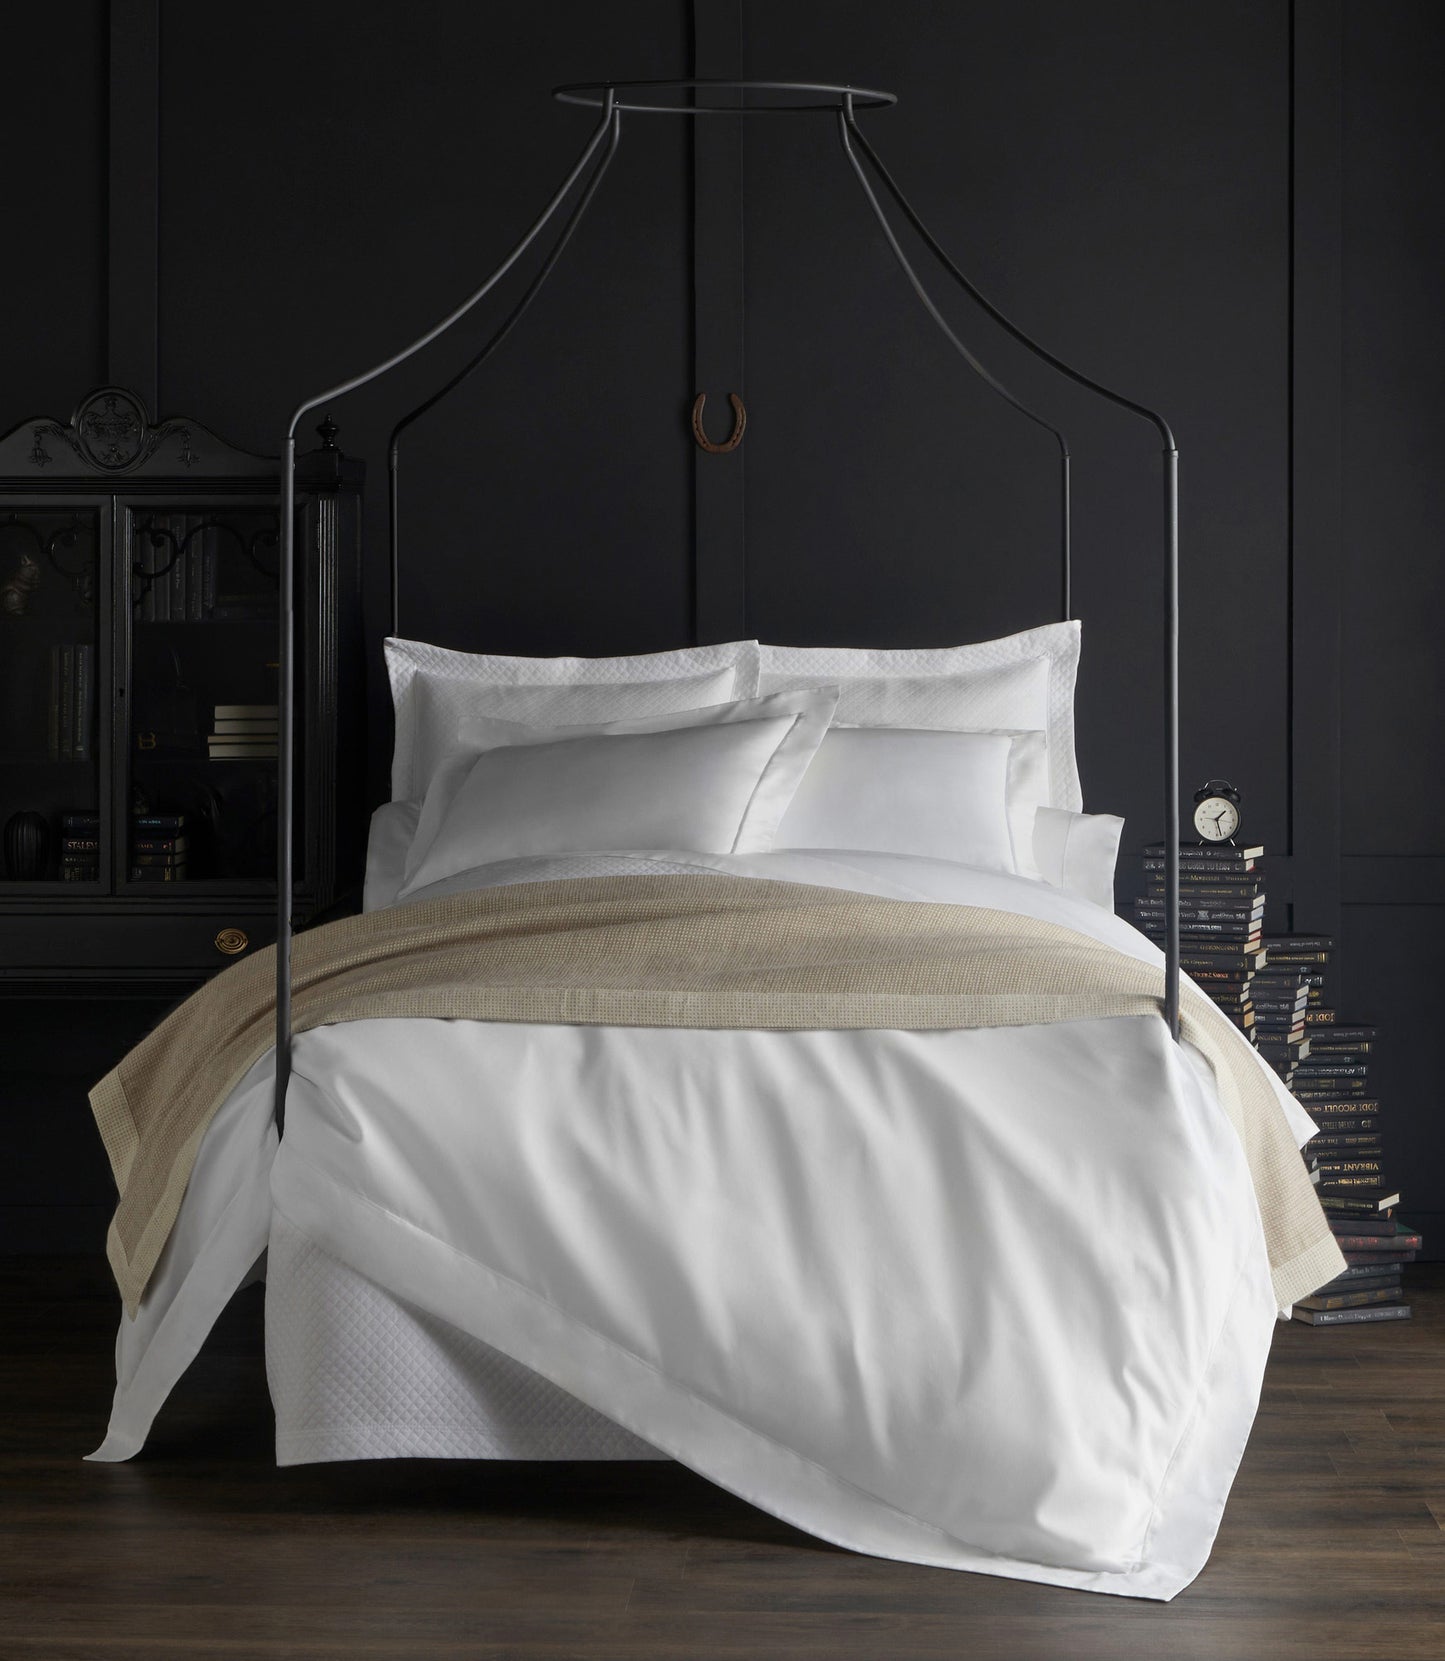 Soprano sateen bedding on bed in black room, White